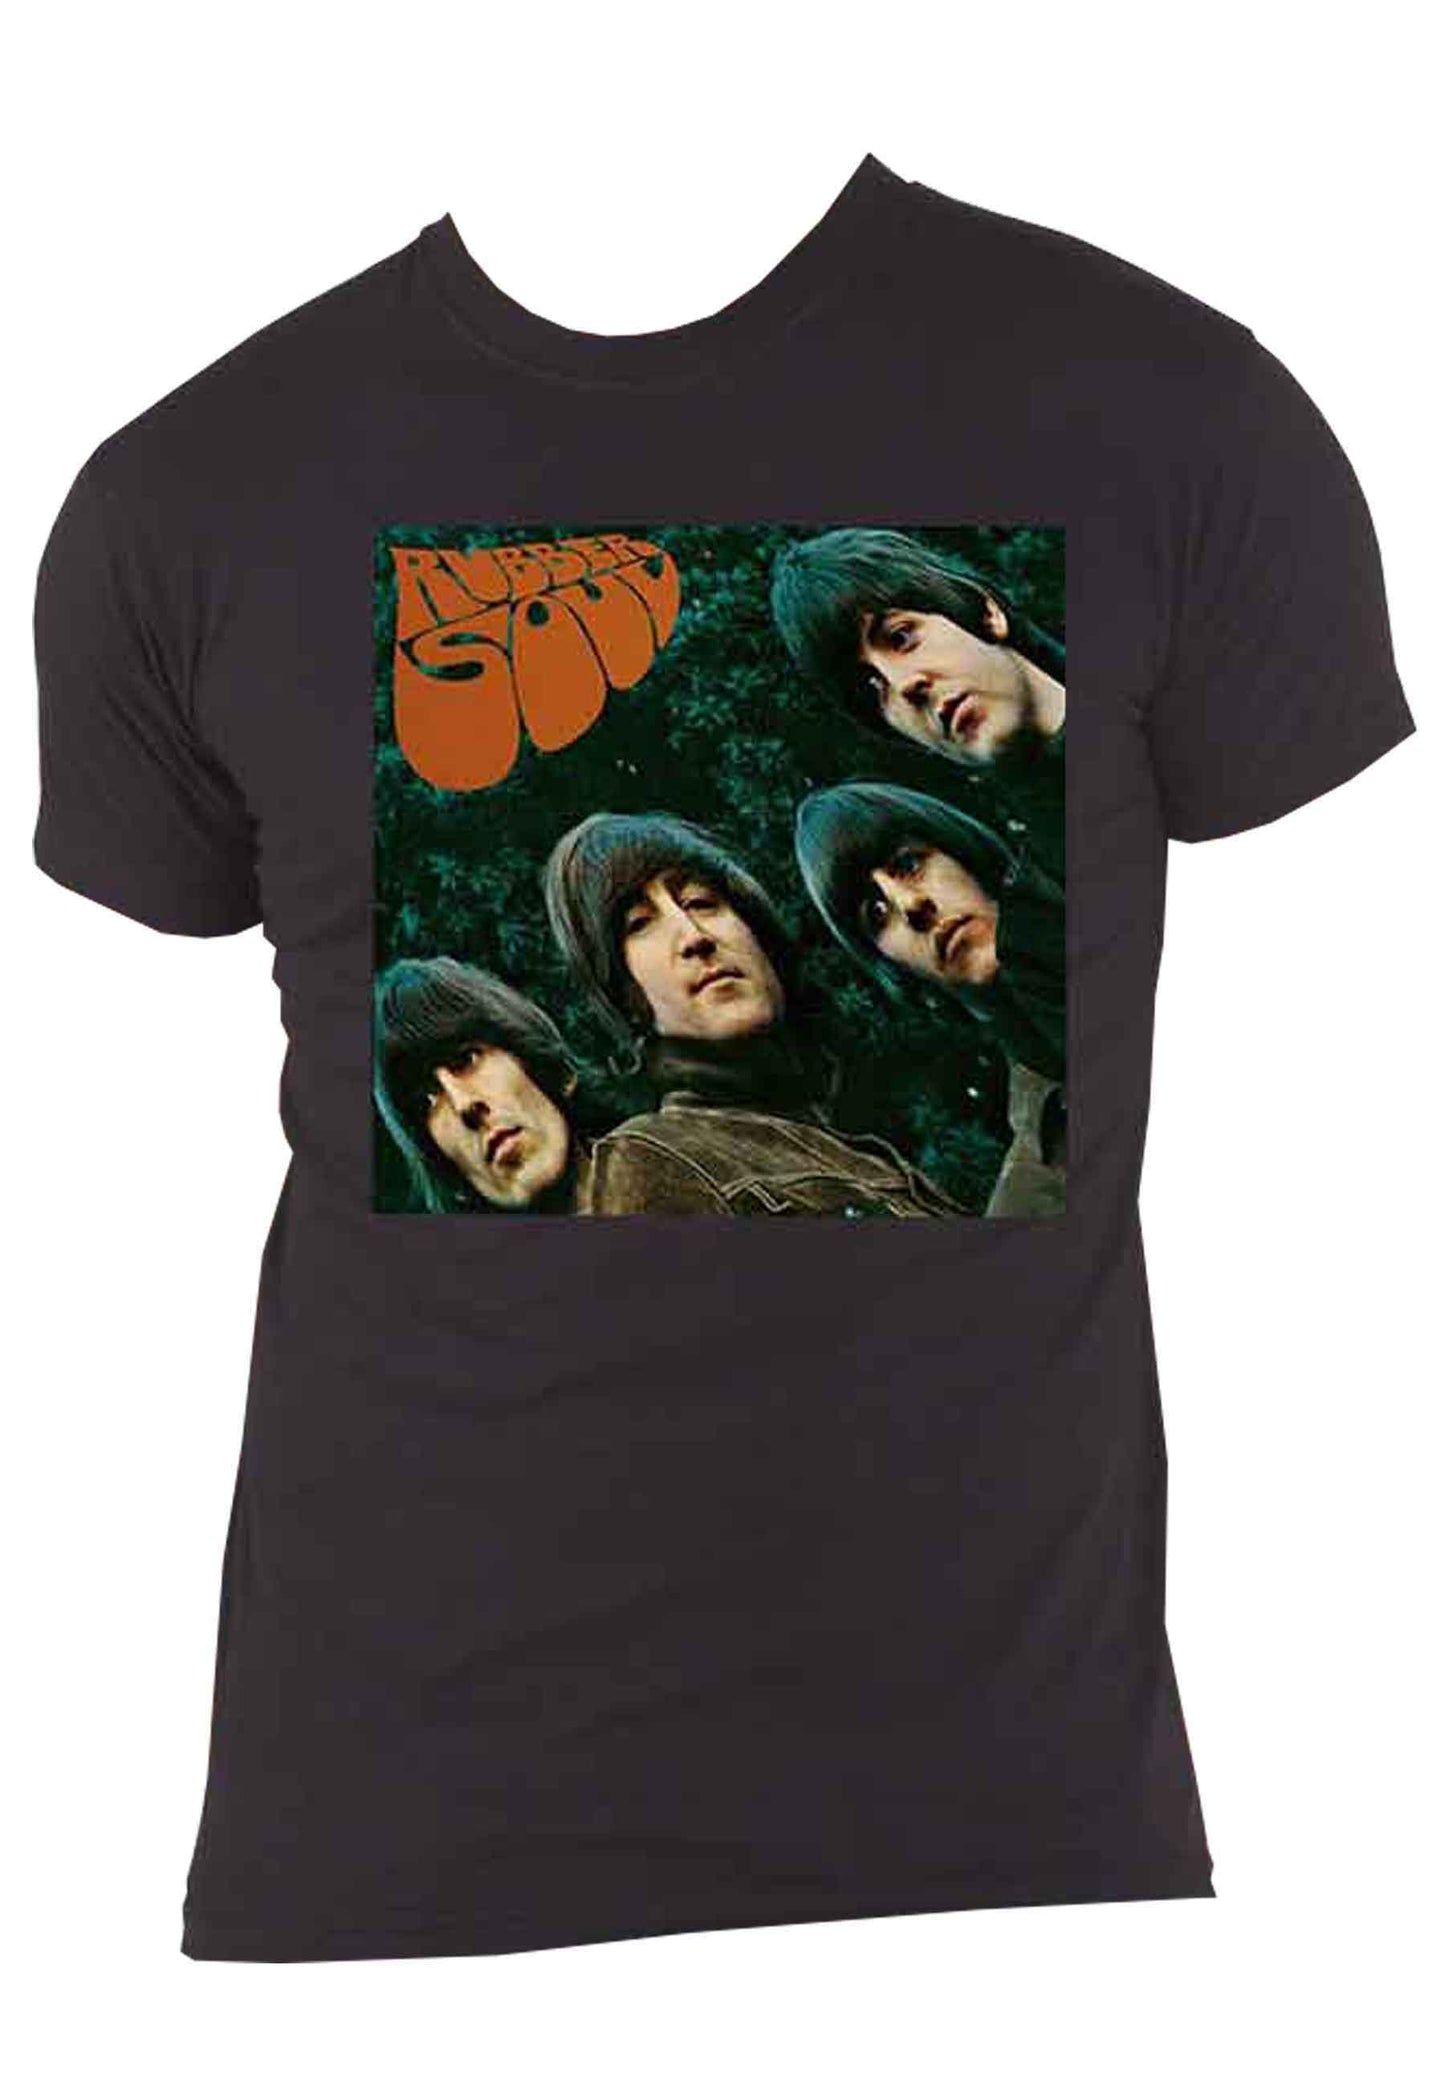 The Beatles Rubber Soul Album Cover T Shirt